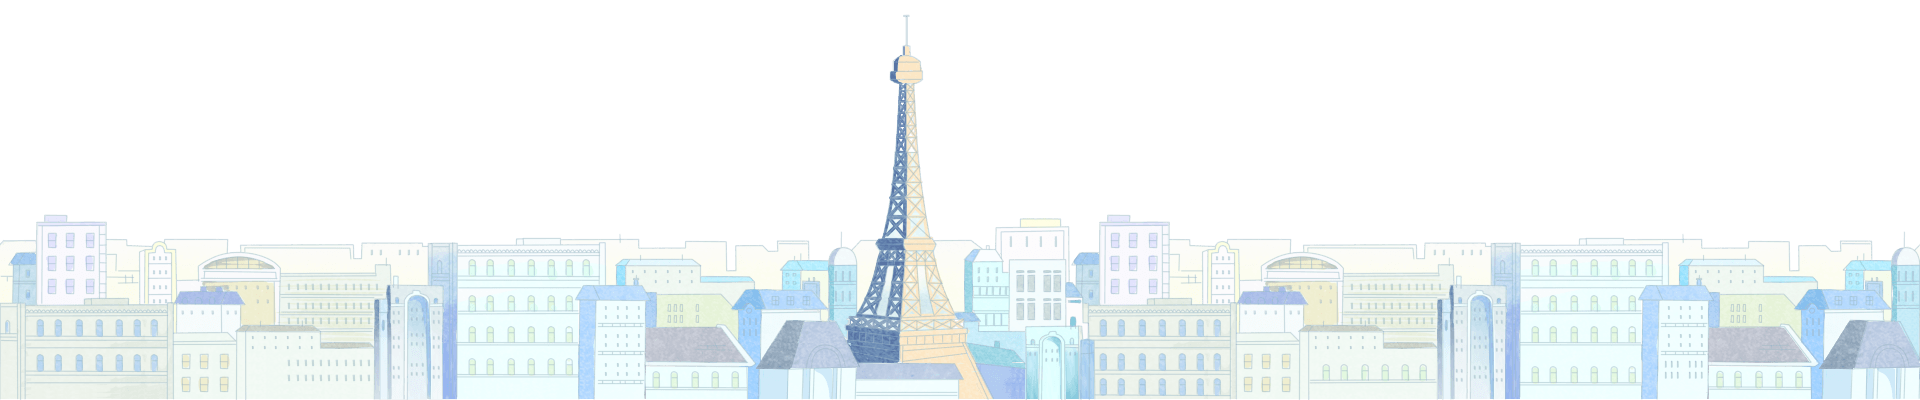 Ben 10: World Rescue - Paris City